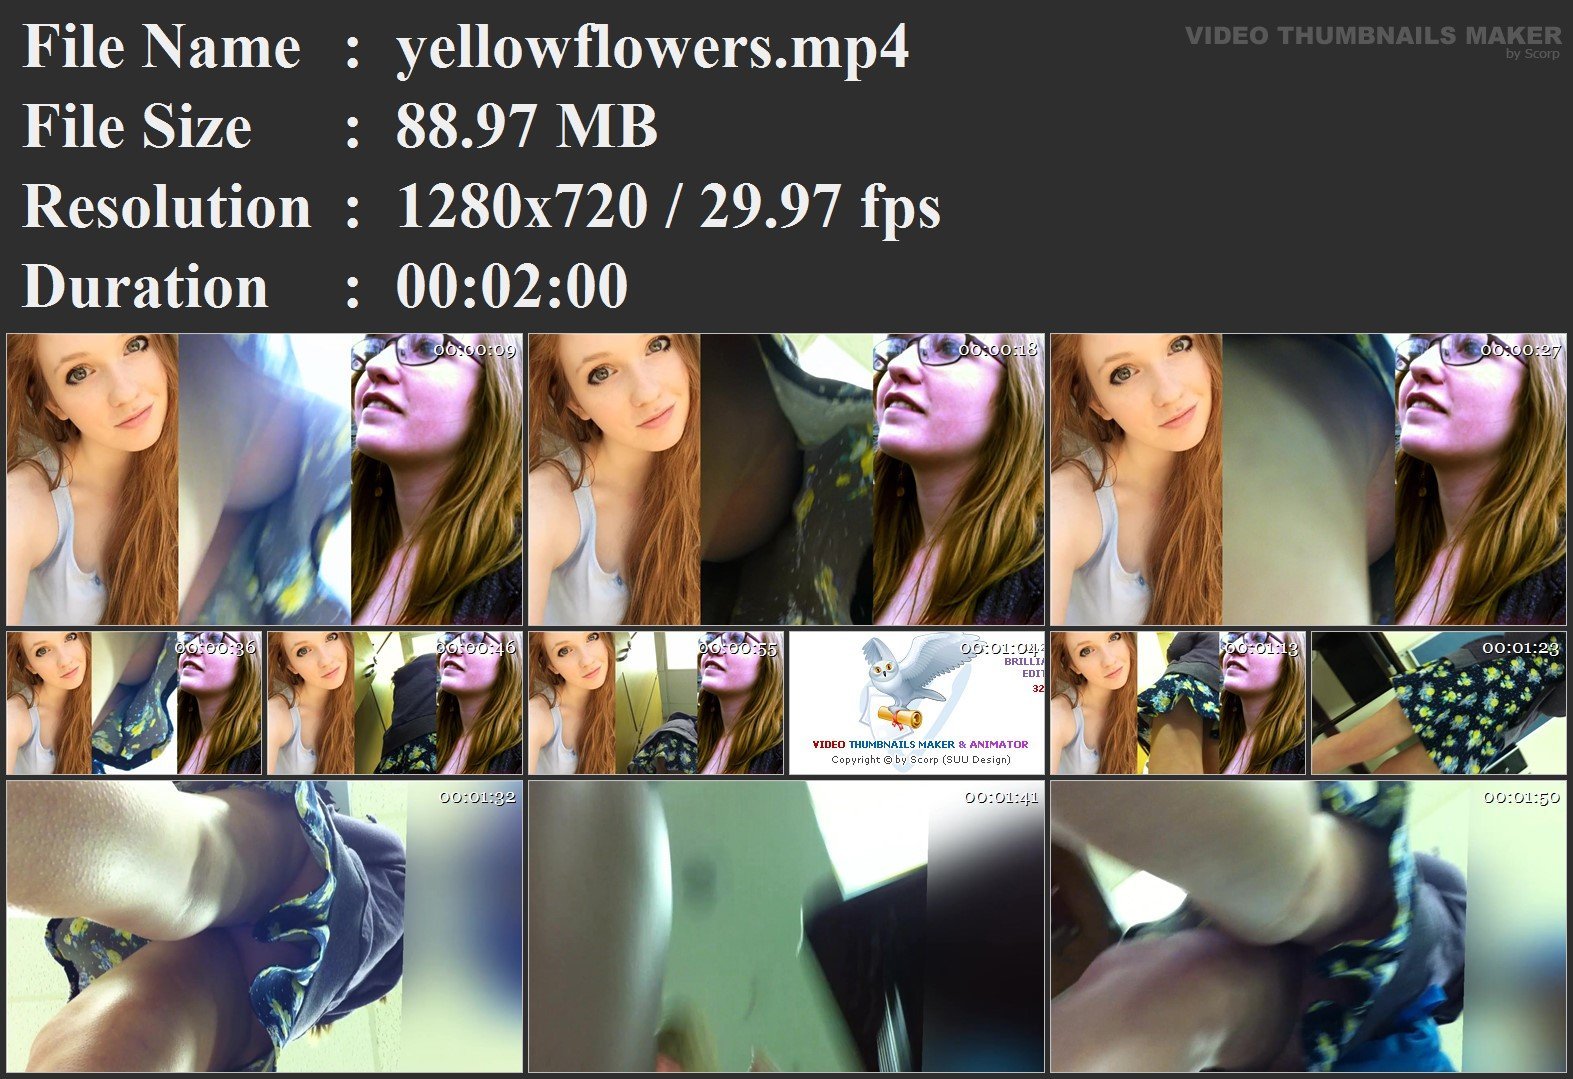 yellowflowers.mp4.jpg